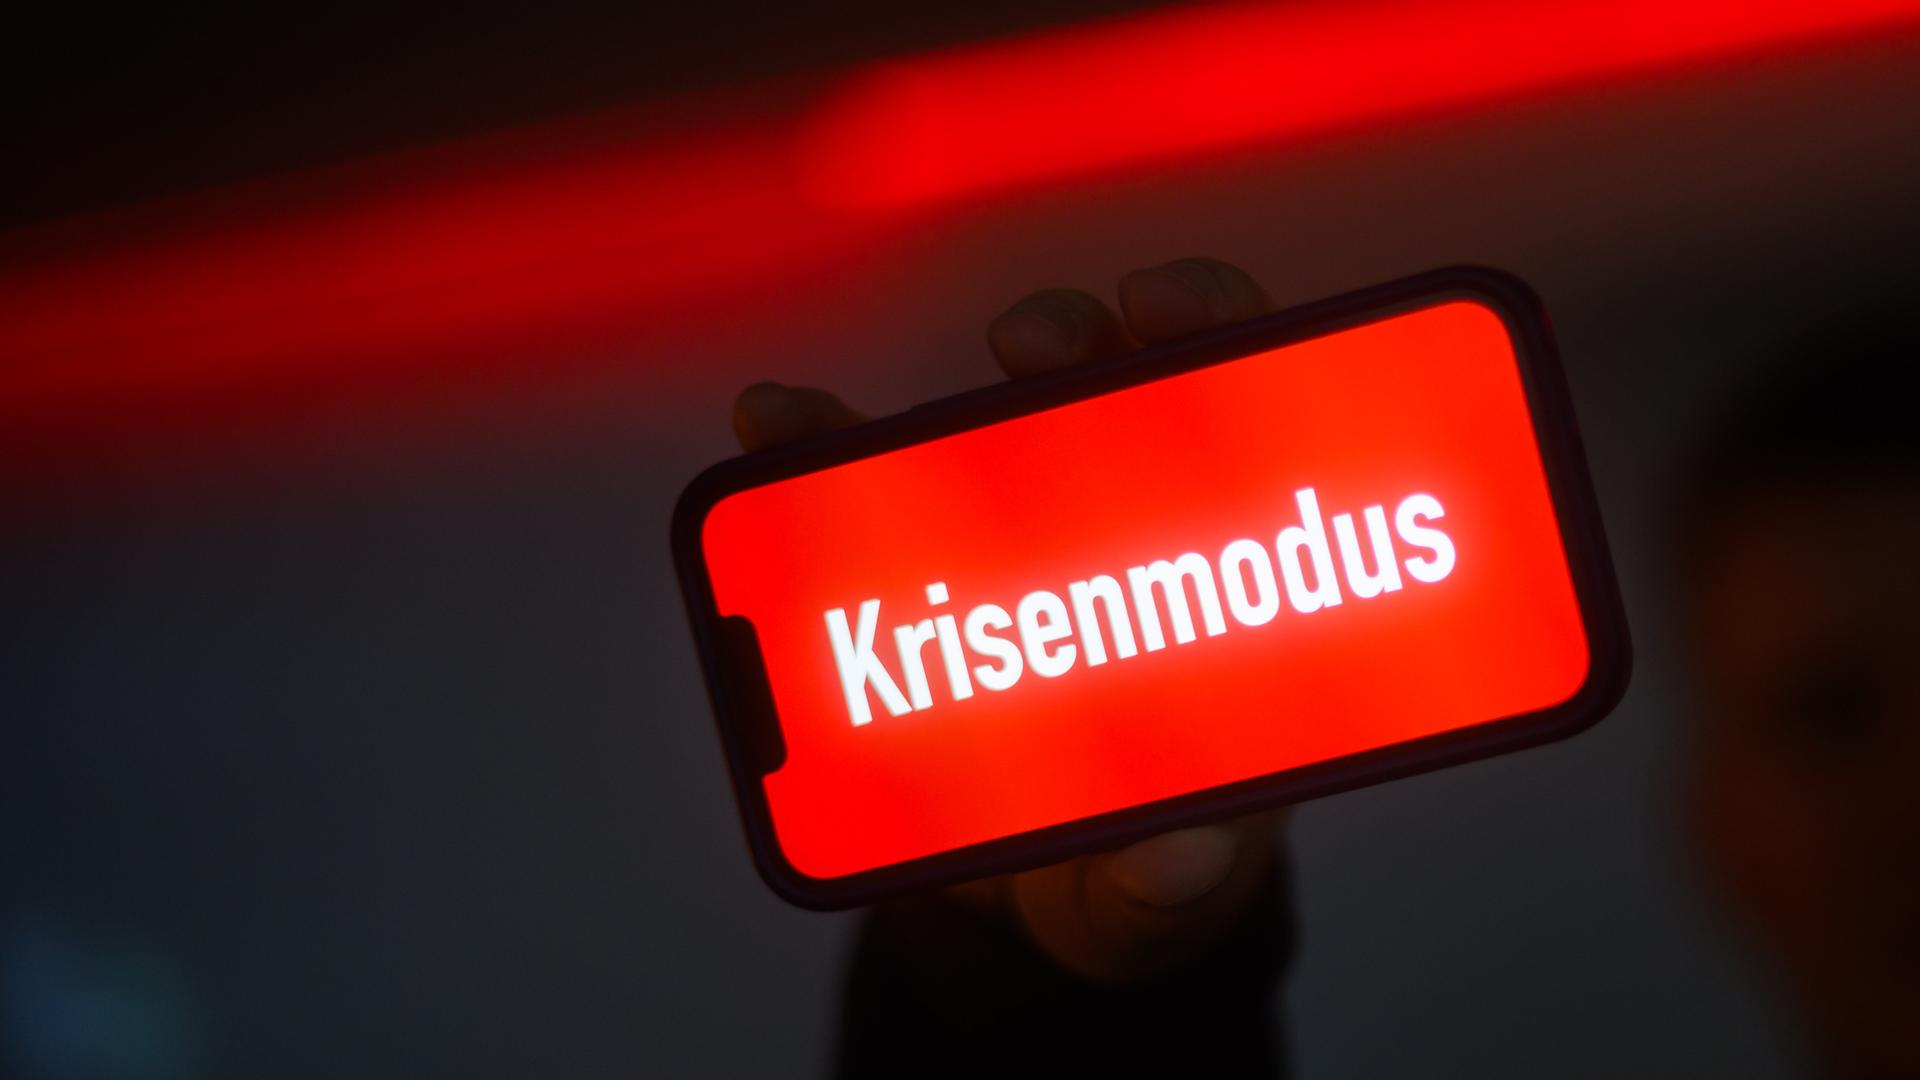 Das Wort "Krisenmodus" steht auf einem Bildschirm von einem Handy. Das Wort ist weiß, der Hintergrund rot.